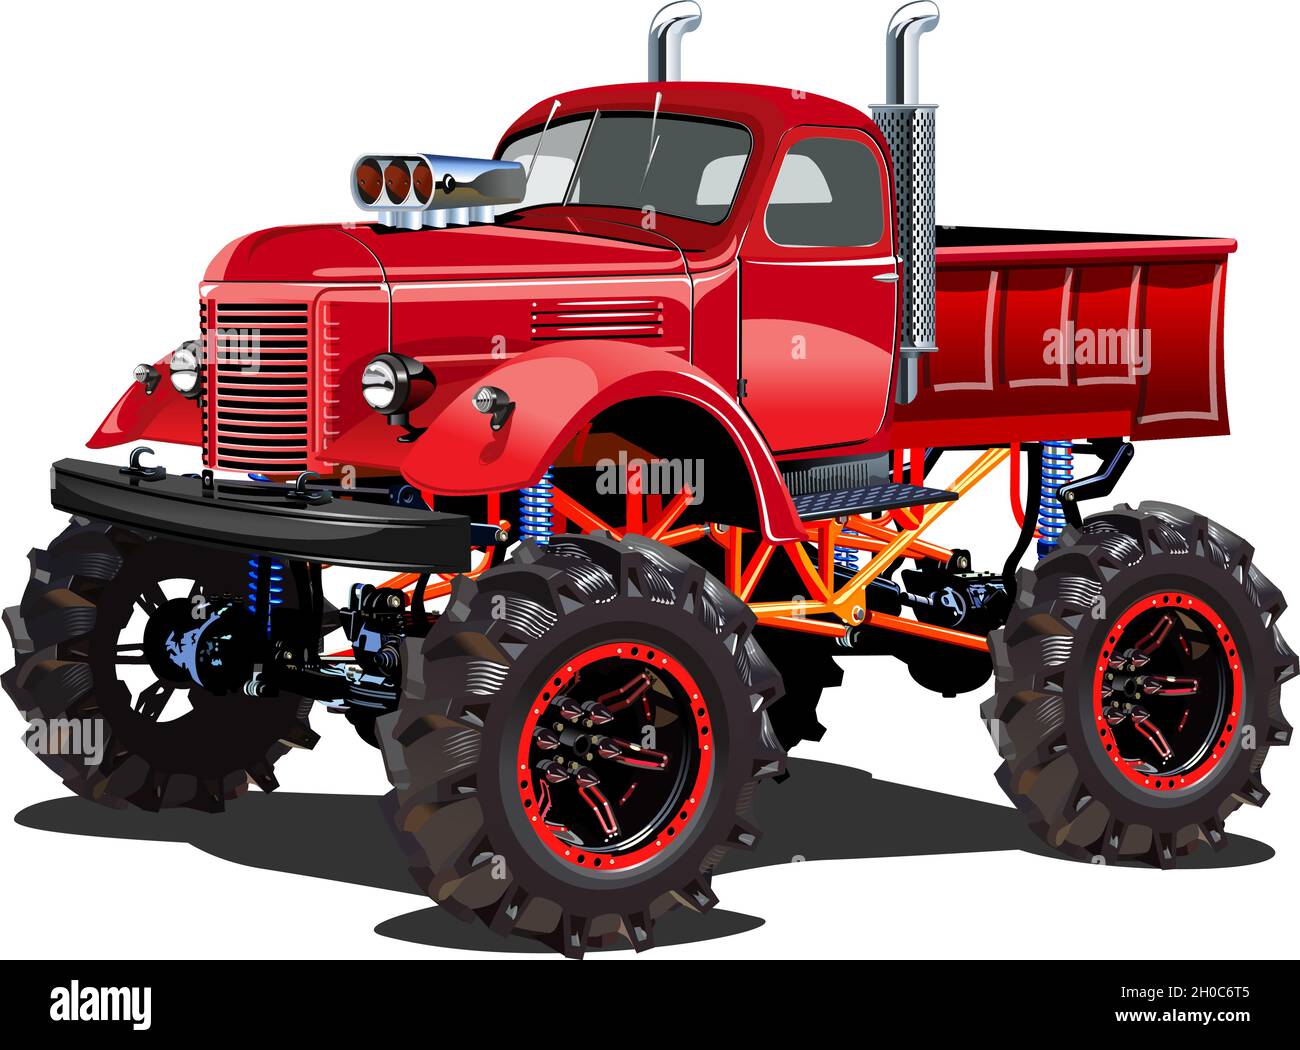 Fumetto Monster Truck. Disponibile EPS-10 separato da gruppi e livelli per una facile modifica Illustrazione Vettoriale